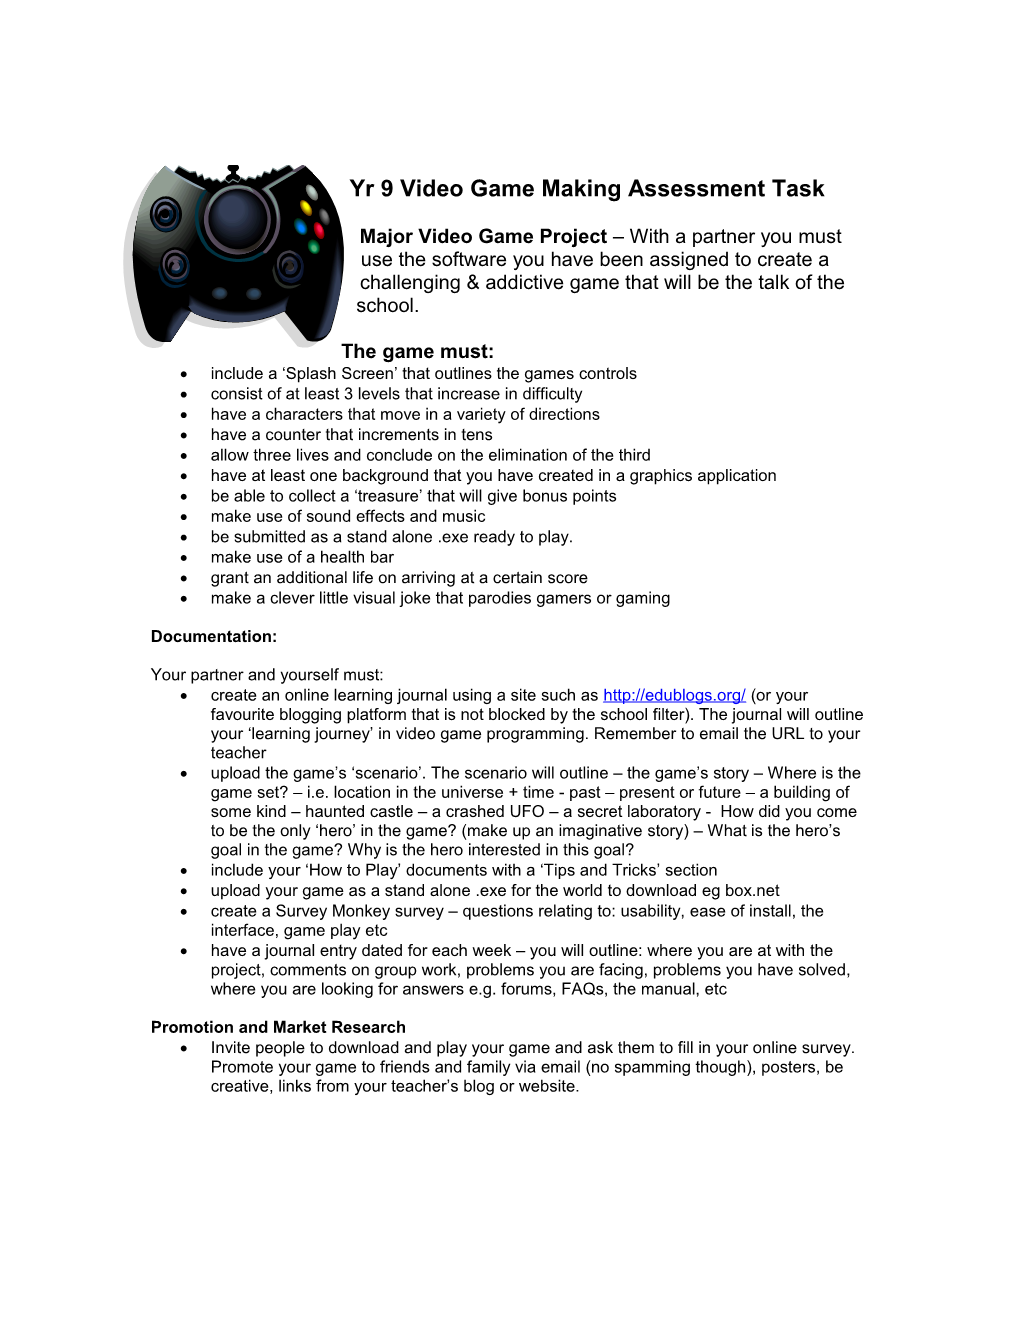 Gamemaking Assessment Task